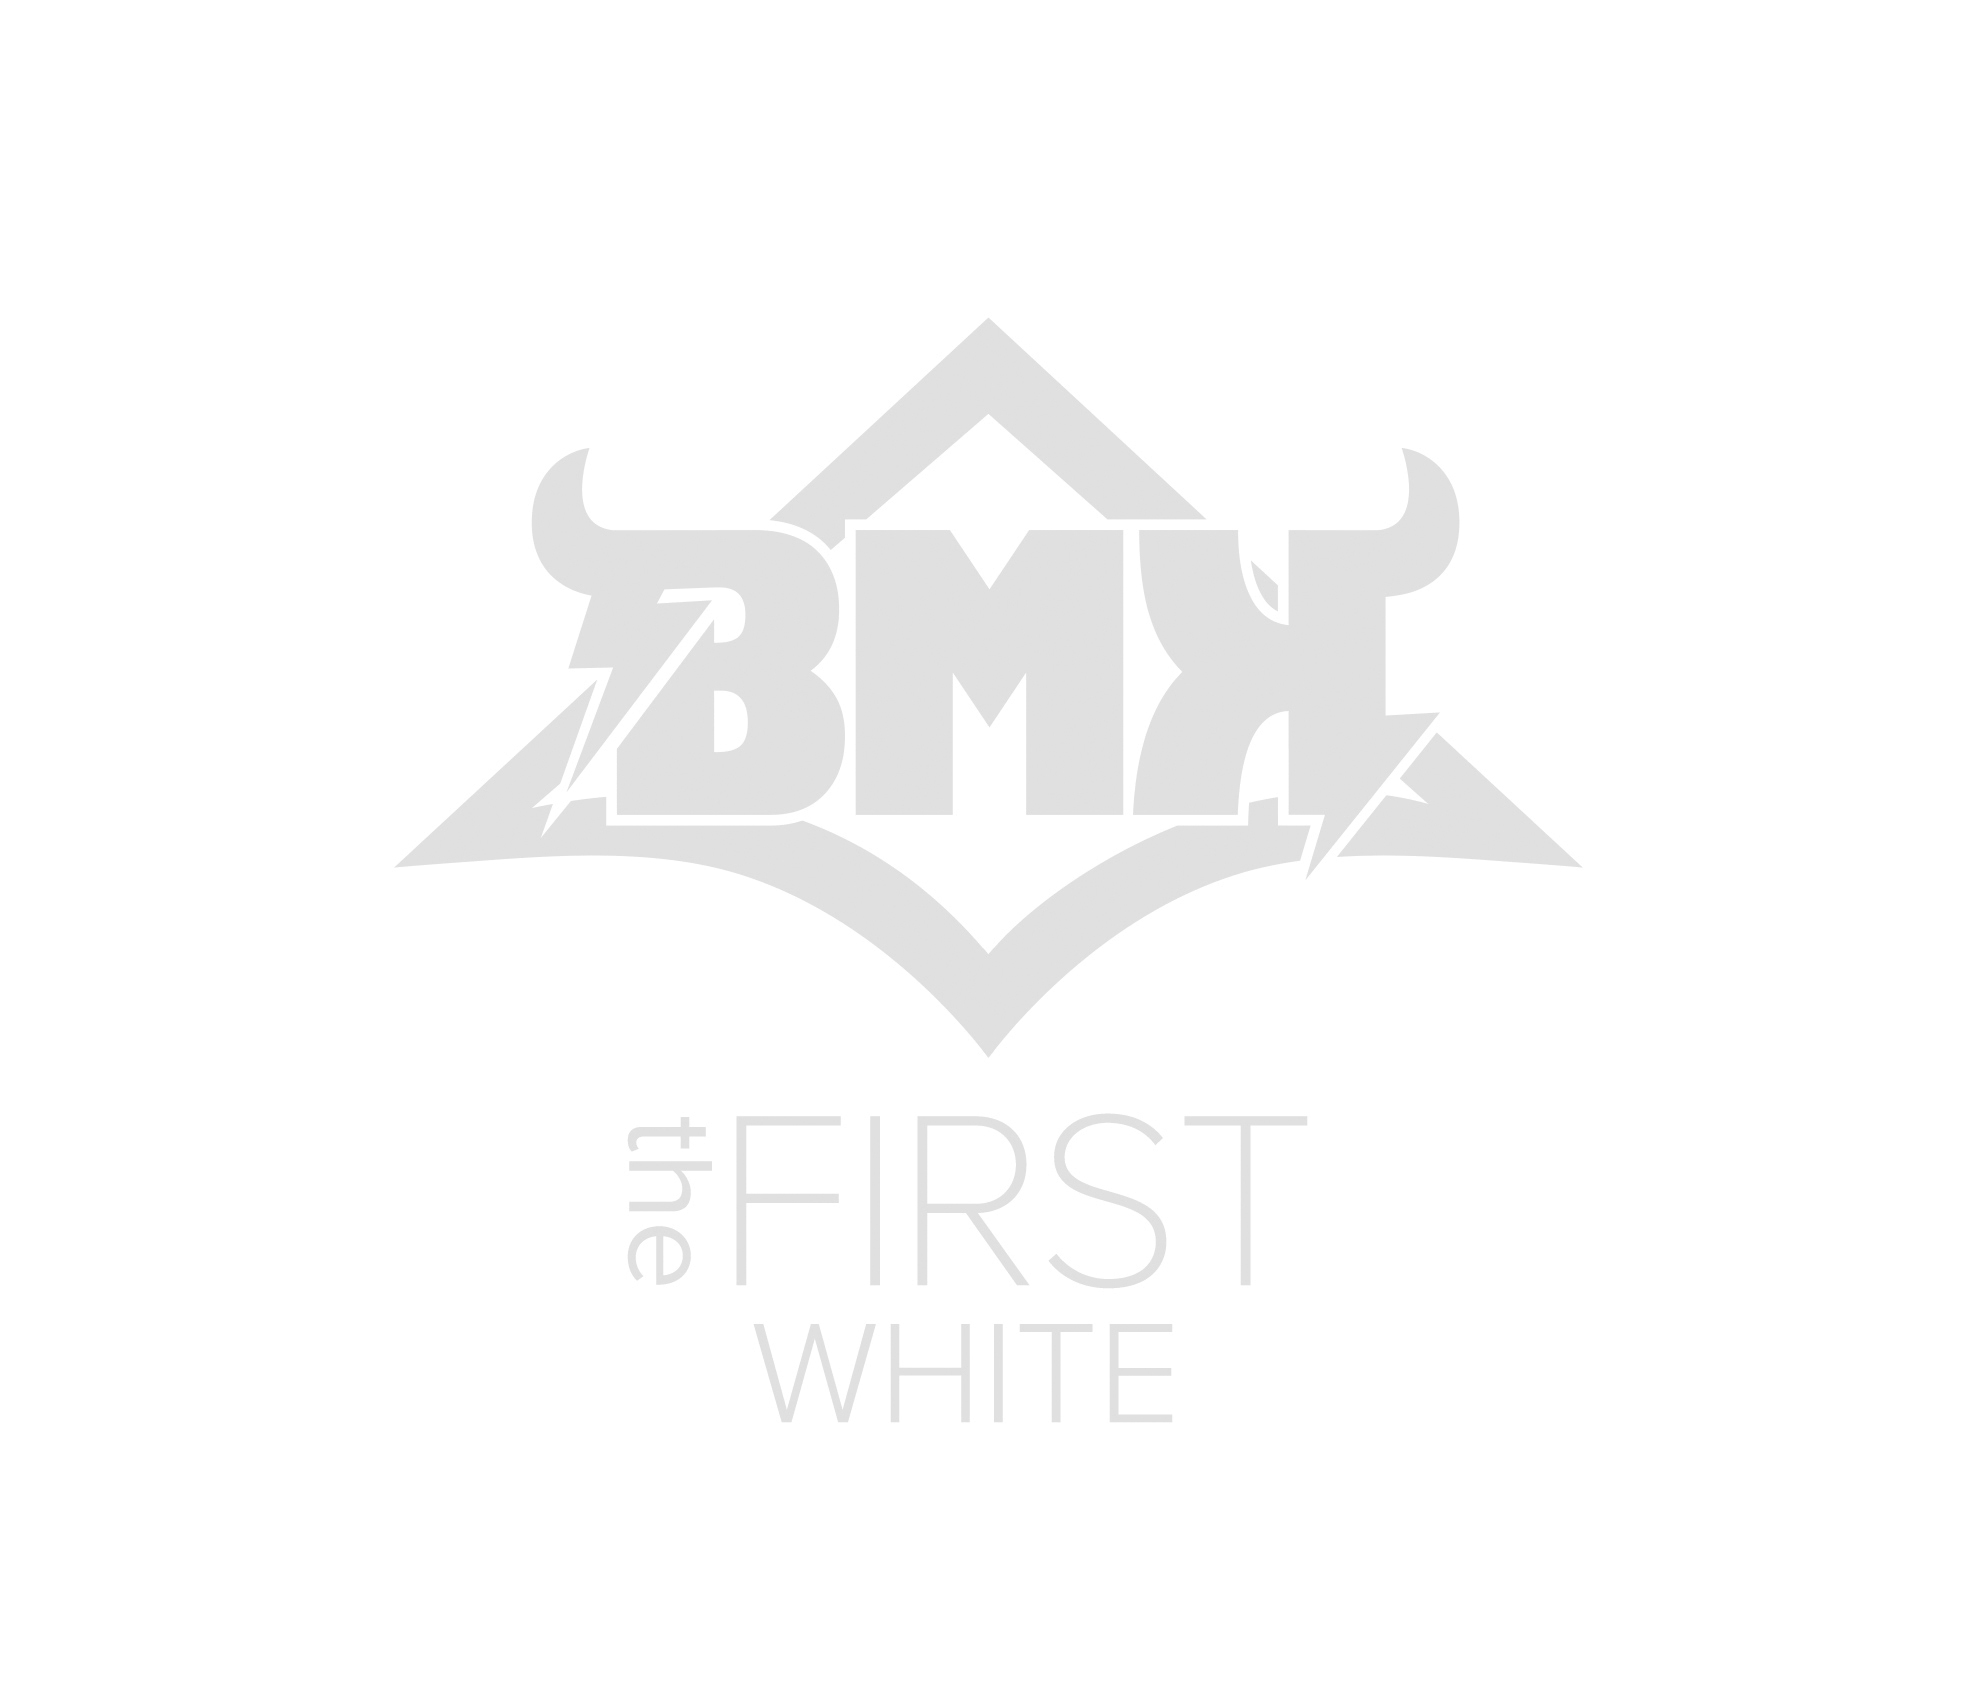 Bmk_thefirst_white